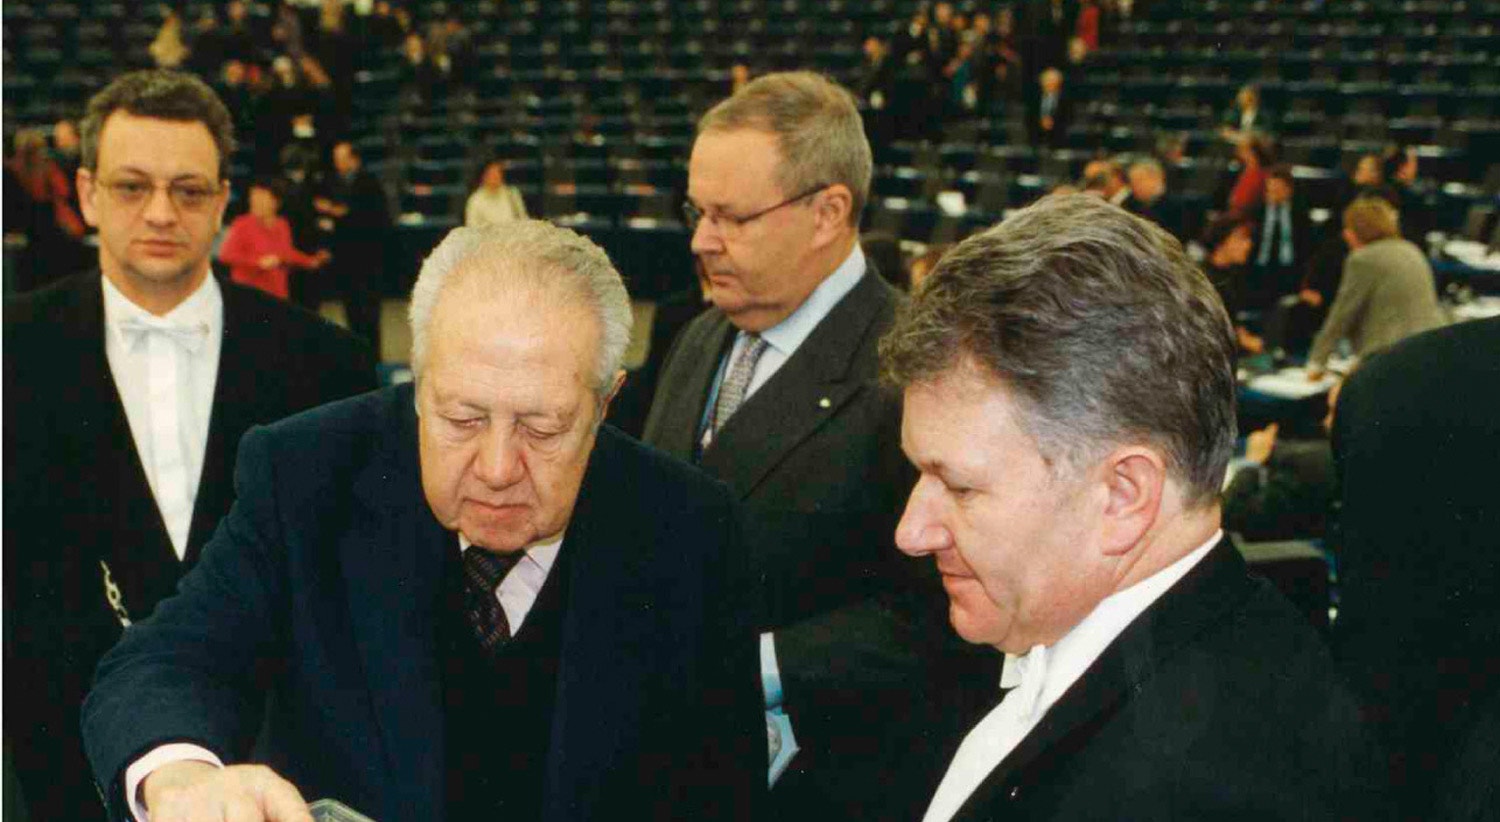  Carlos Cordeiro a acompanhar M&aacute;rio Soares na vota&ccedil;&atilde;o para a Presid&ecirc;ncia do Parlamento Europeu em 1999 / Fonte: Arquivo Pessoal  